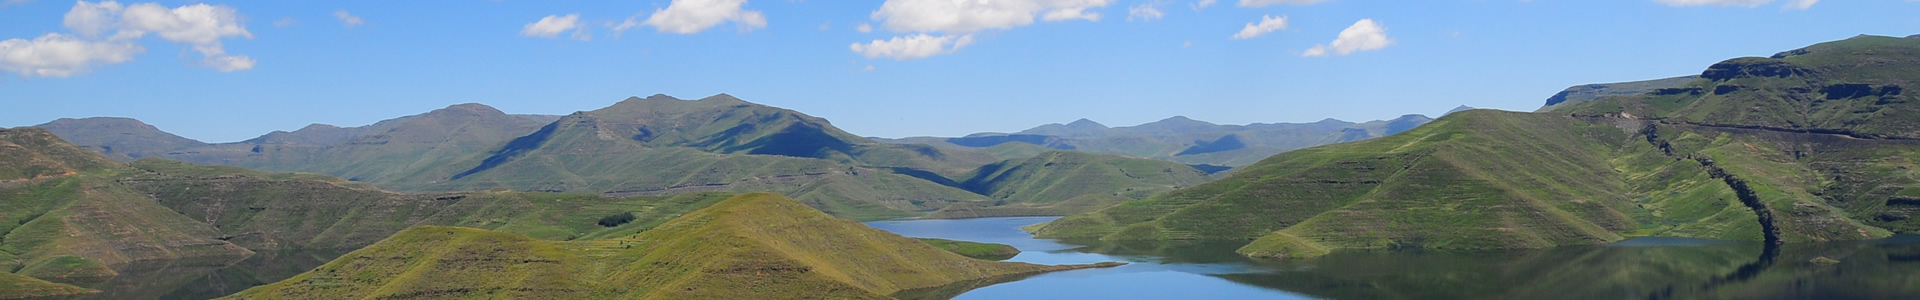 Lesotho6